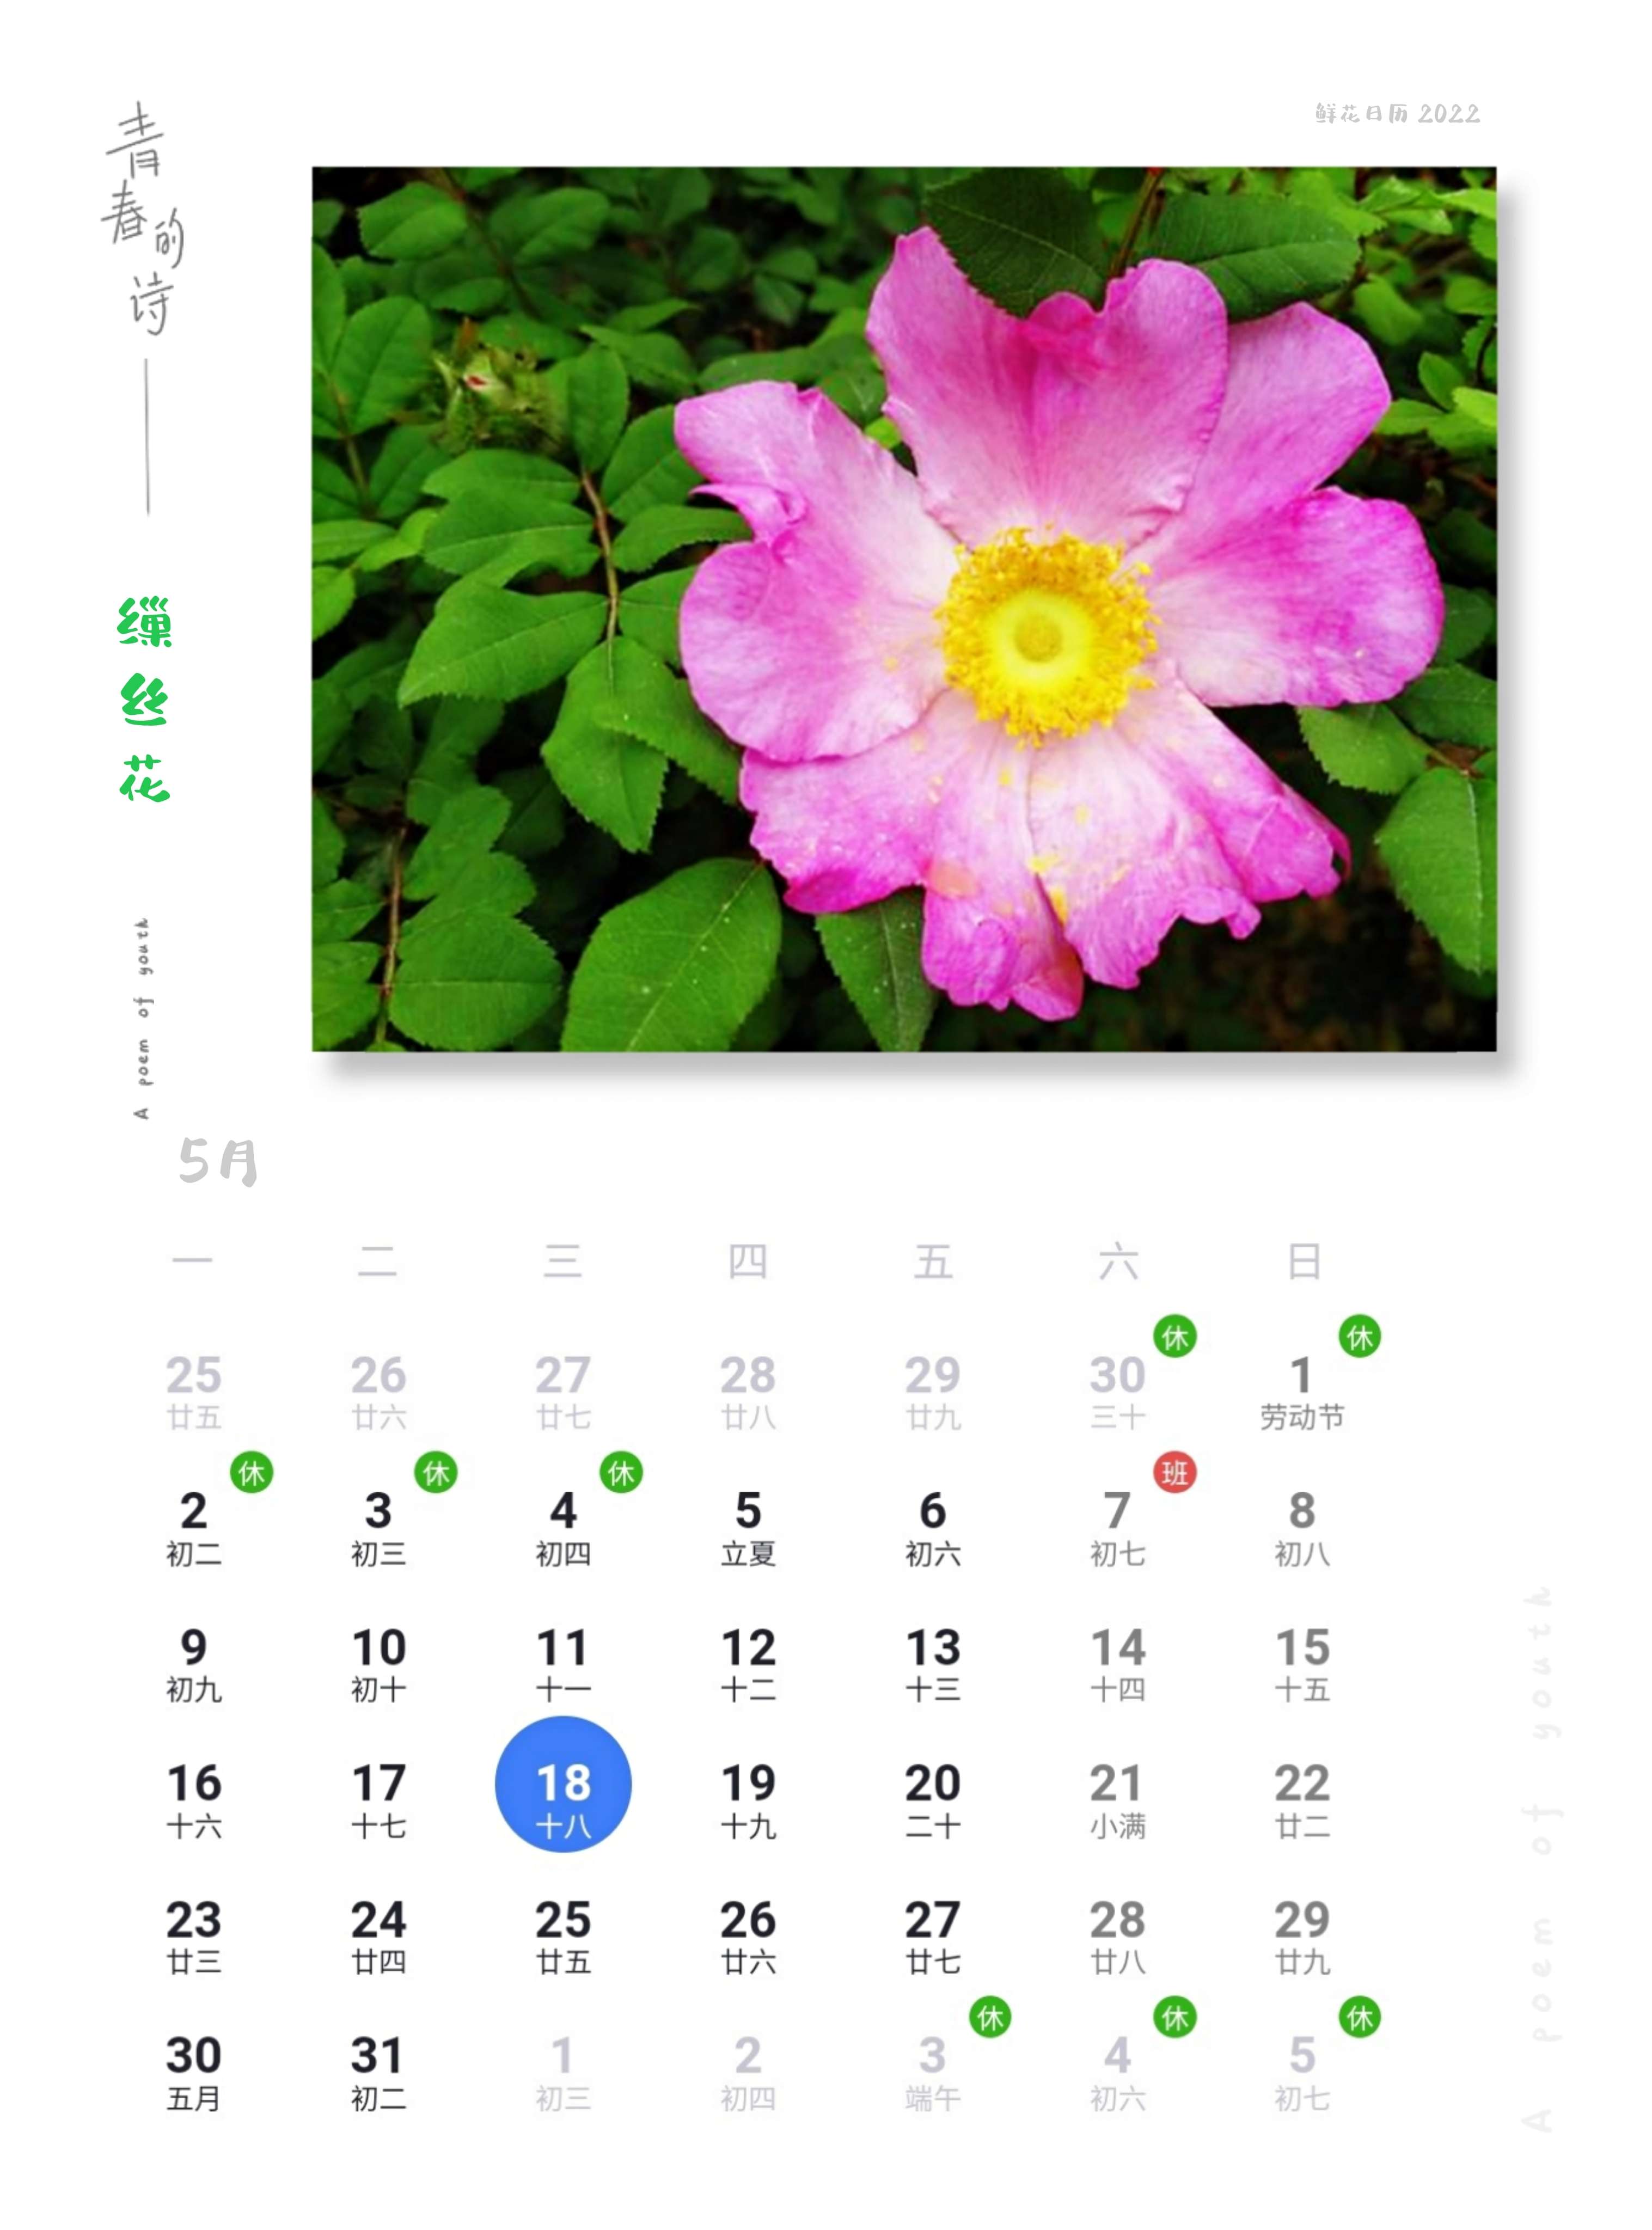 鲜花日历 的想法: 鲜花日历,5月18日缫丝花 